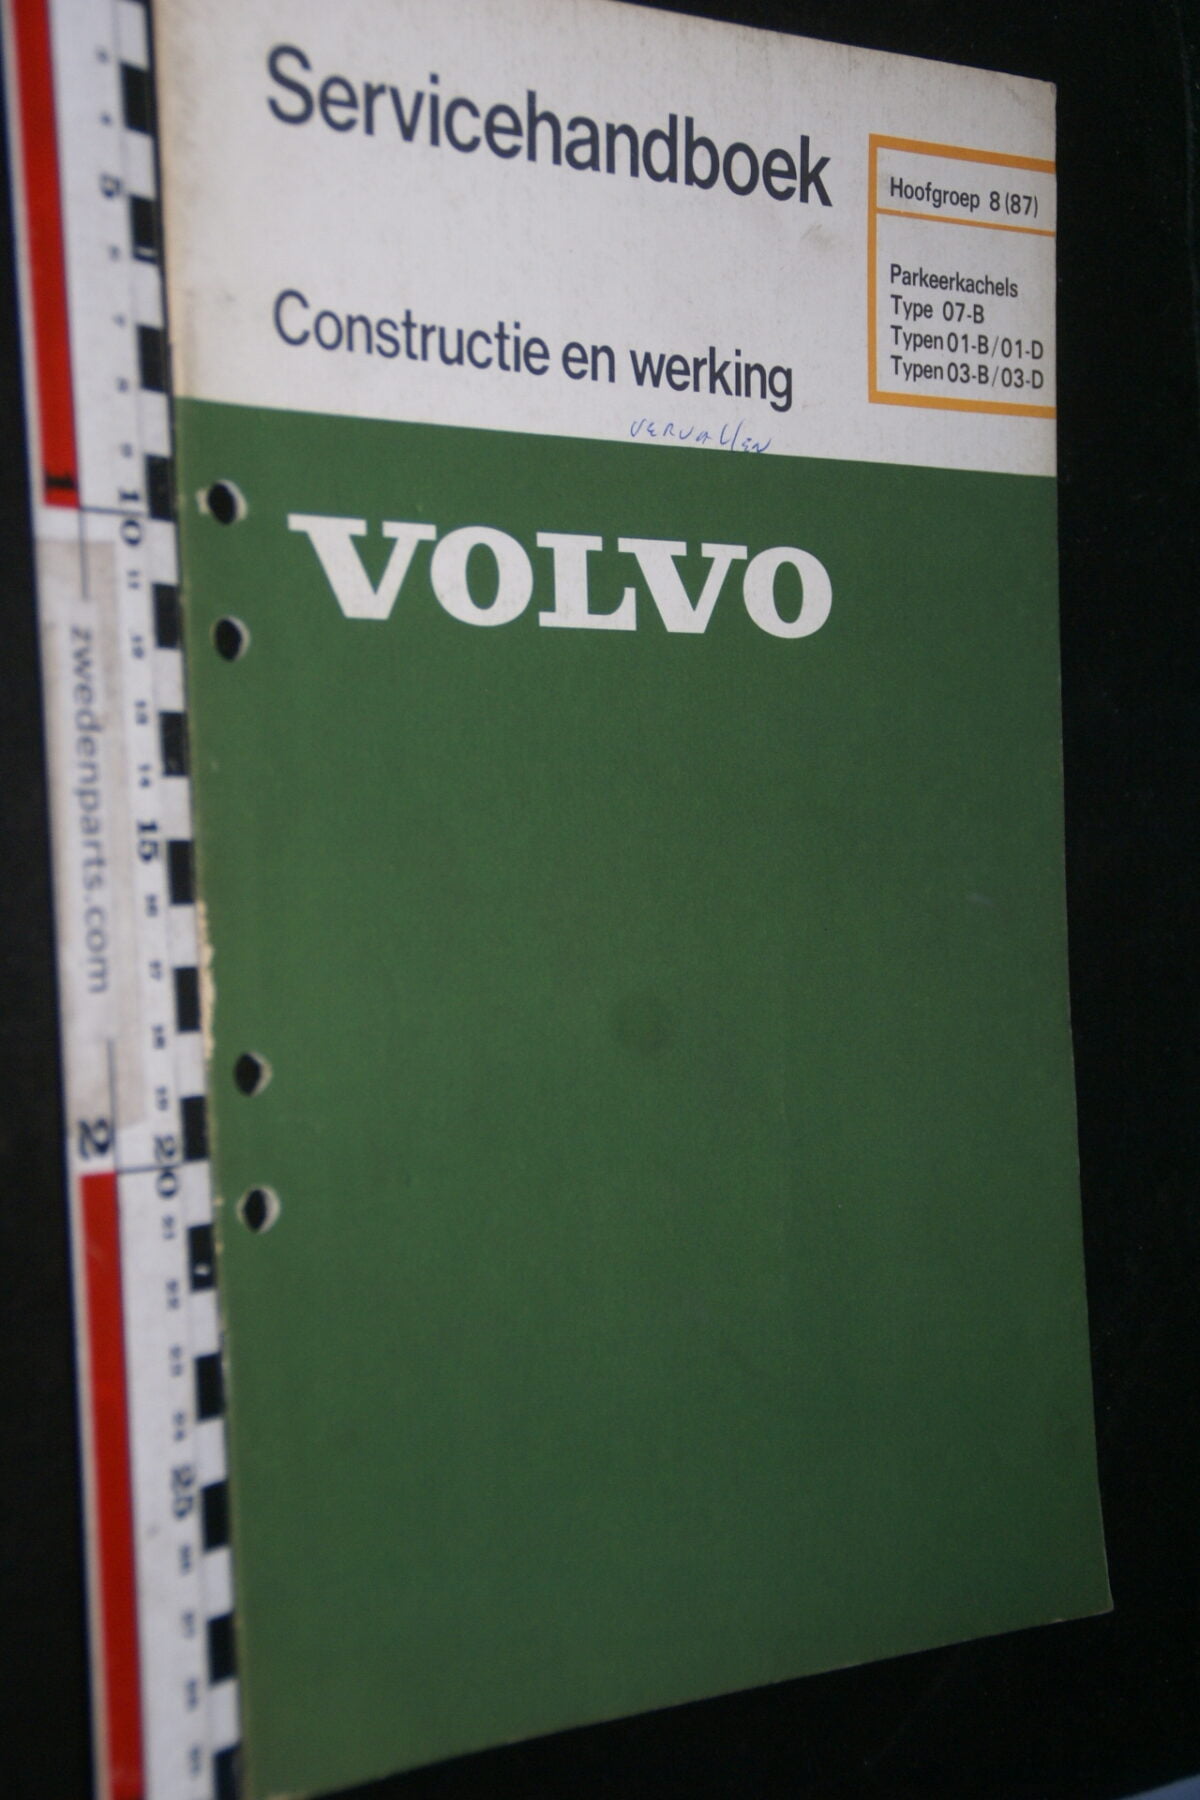 DSC02828 1980 origineel werkplaatsboek 8(87) Volvo parkeerkachel, 1 van 800, nr TP 30211-1-ca774c45